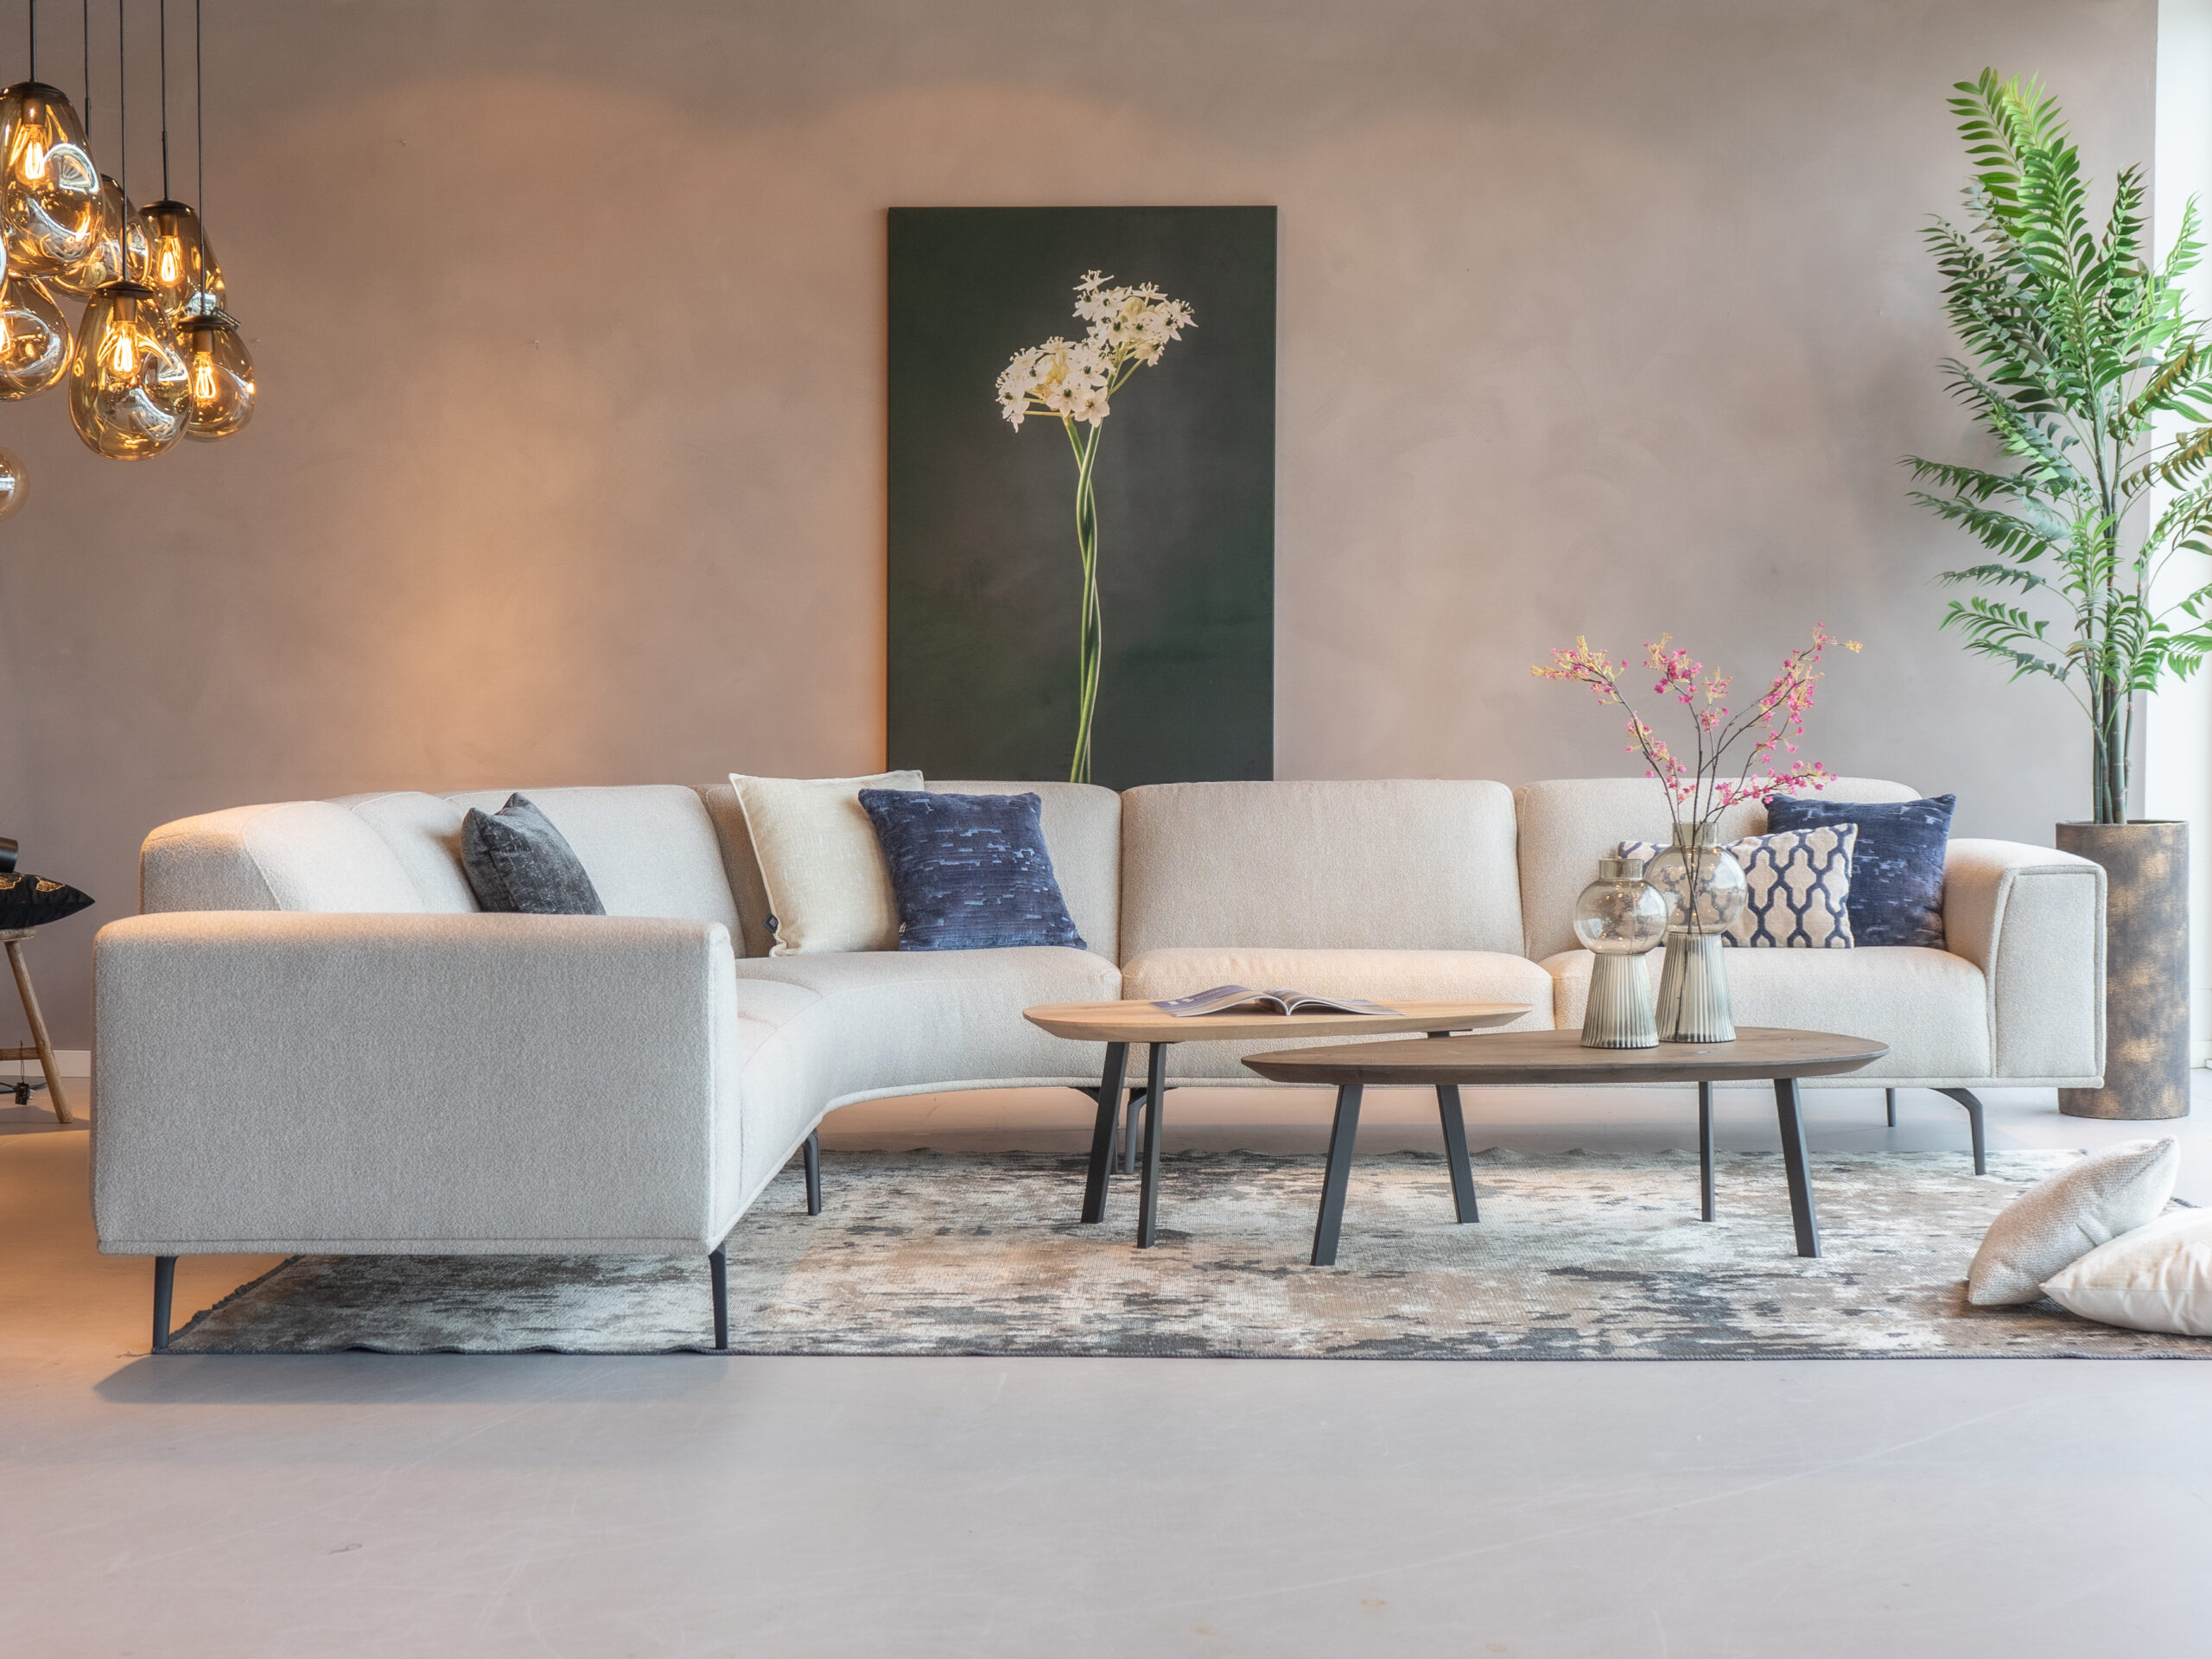 Moria hoekbank met Ciottolo salontafel, een elegante set voor je woonkamer